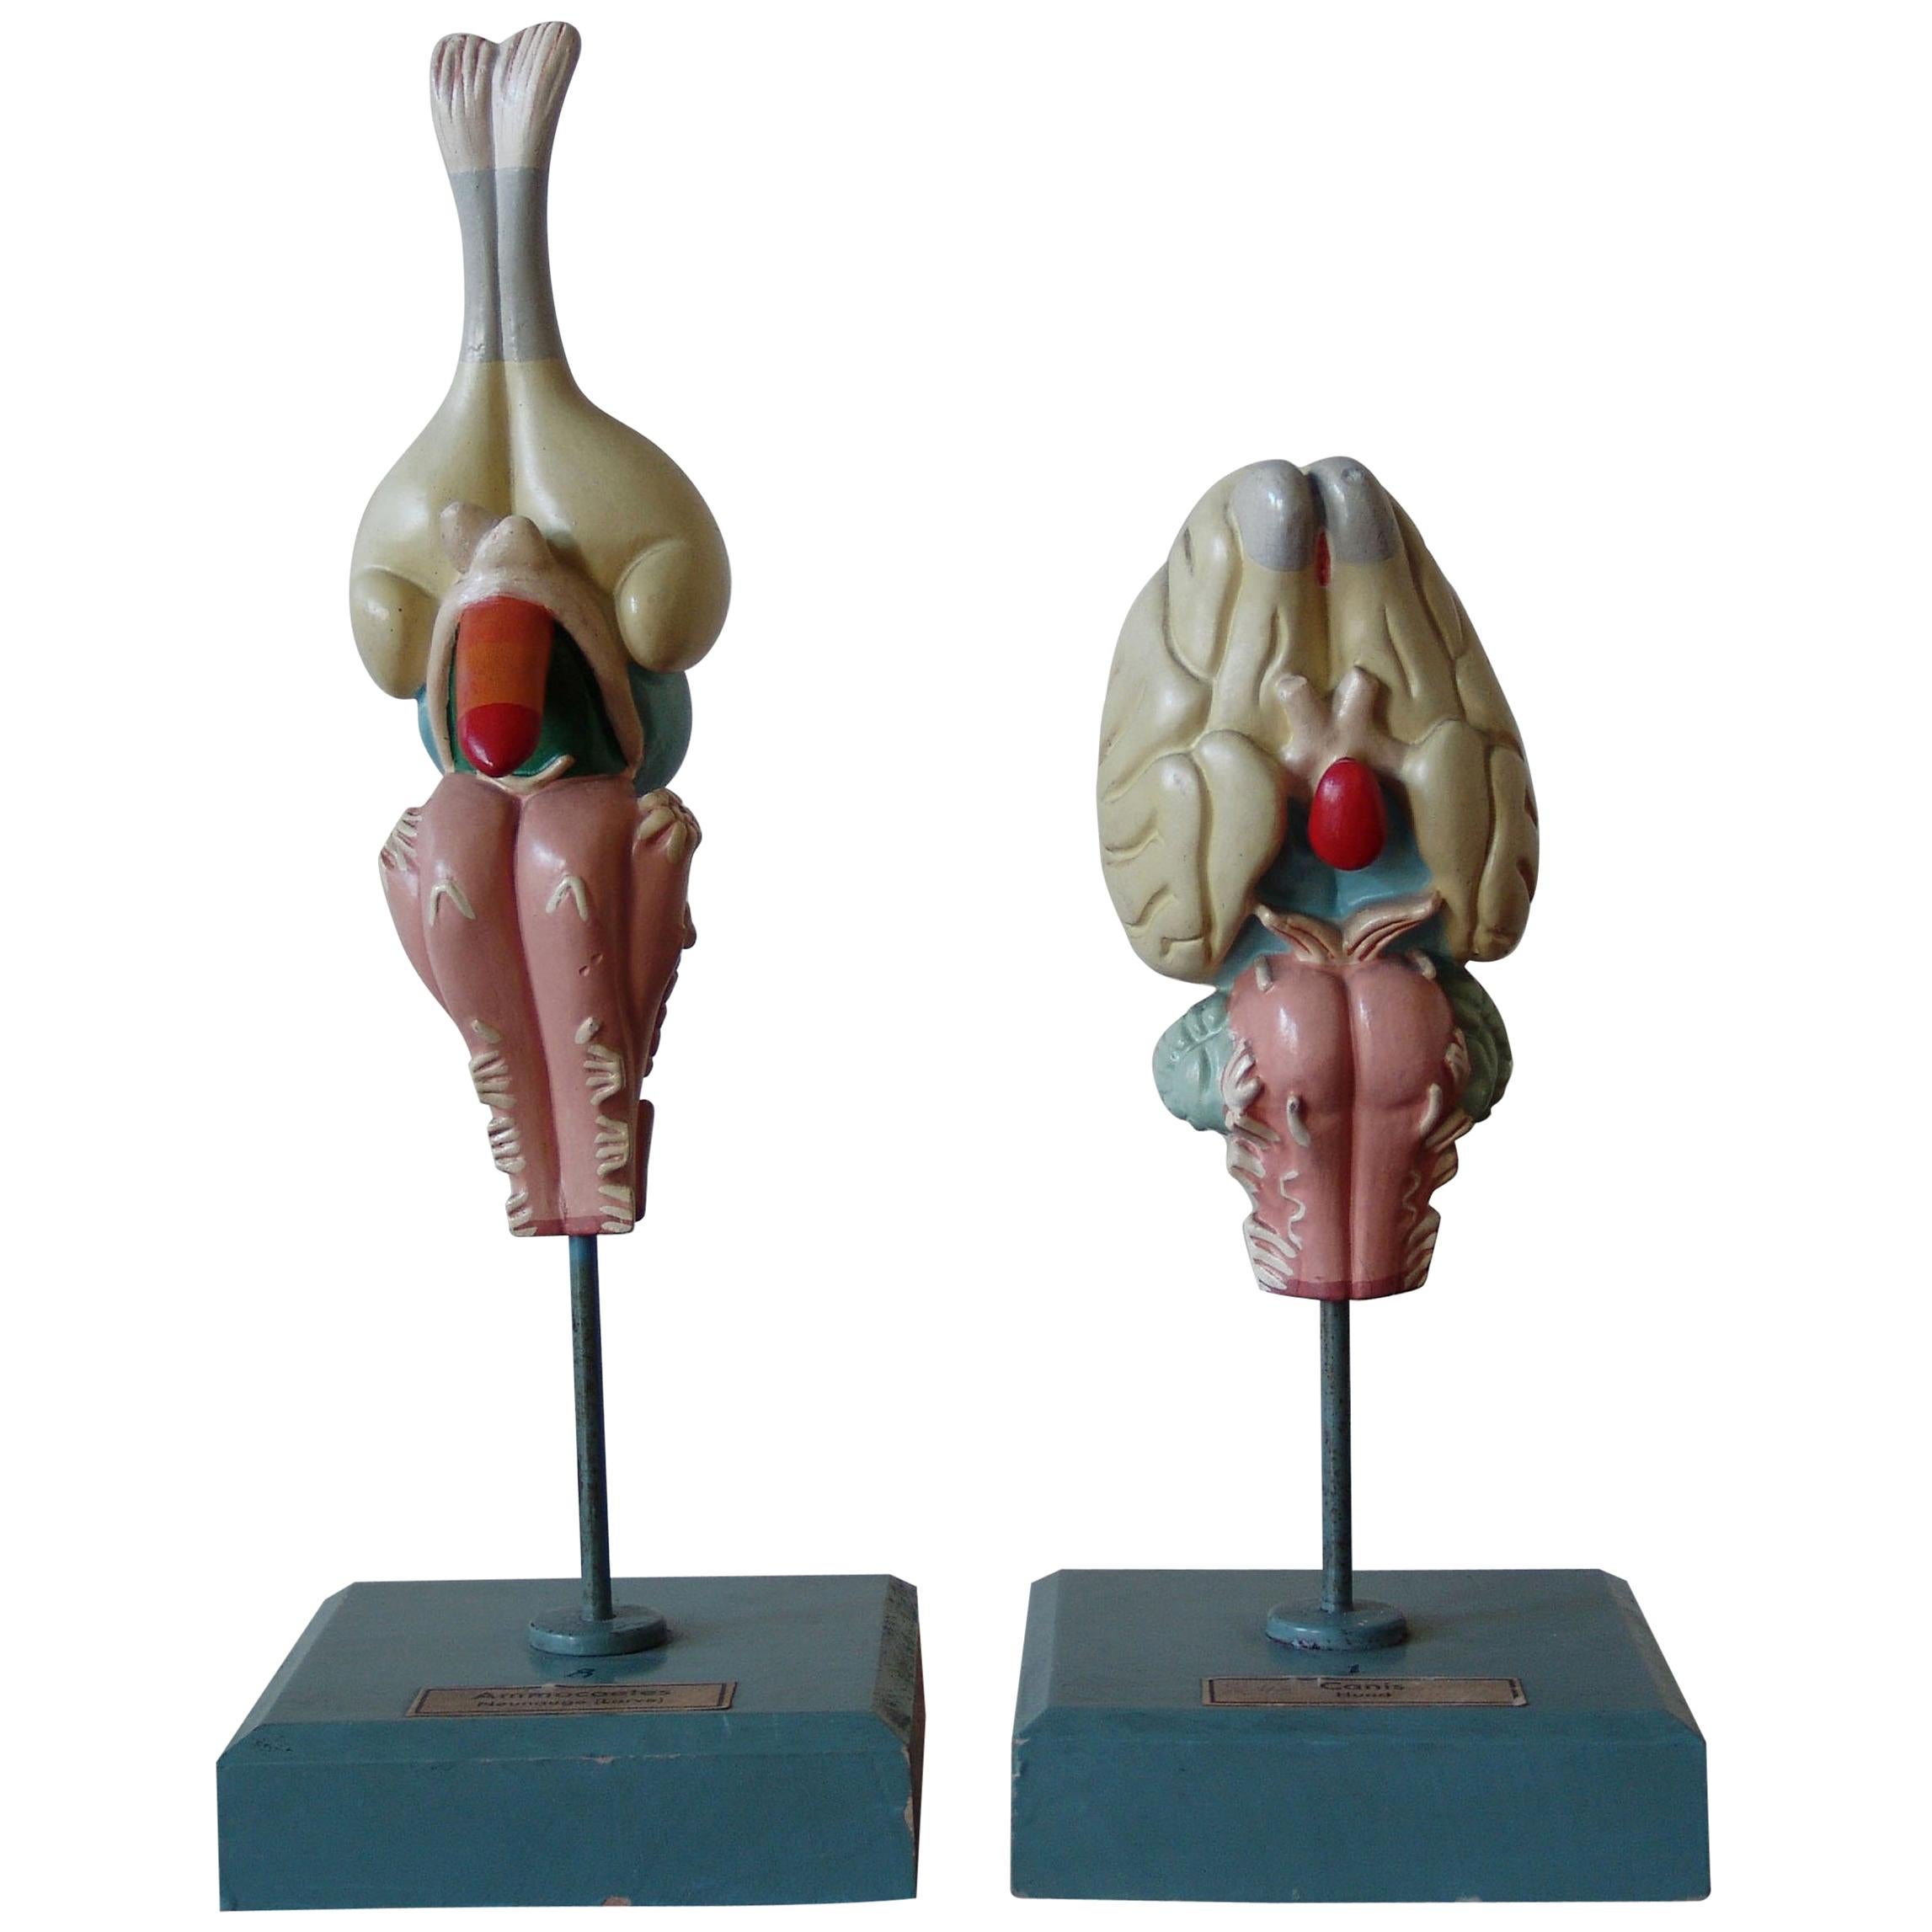 1950s Midcentury Design English Anatomical Models University